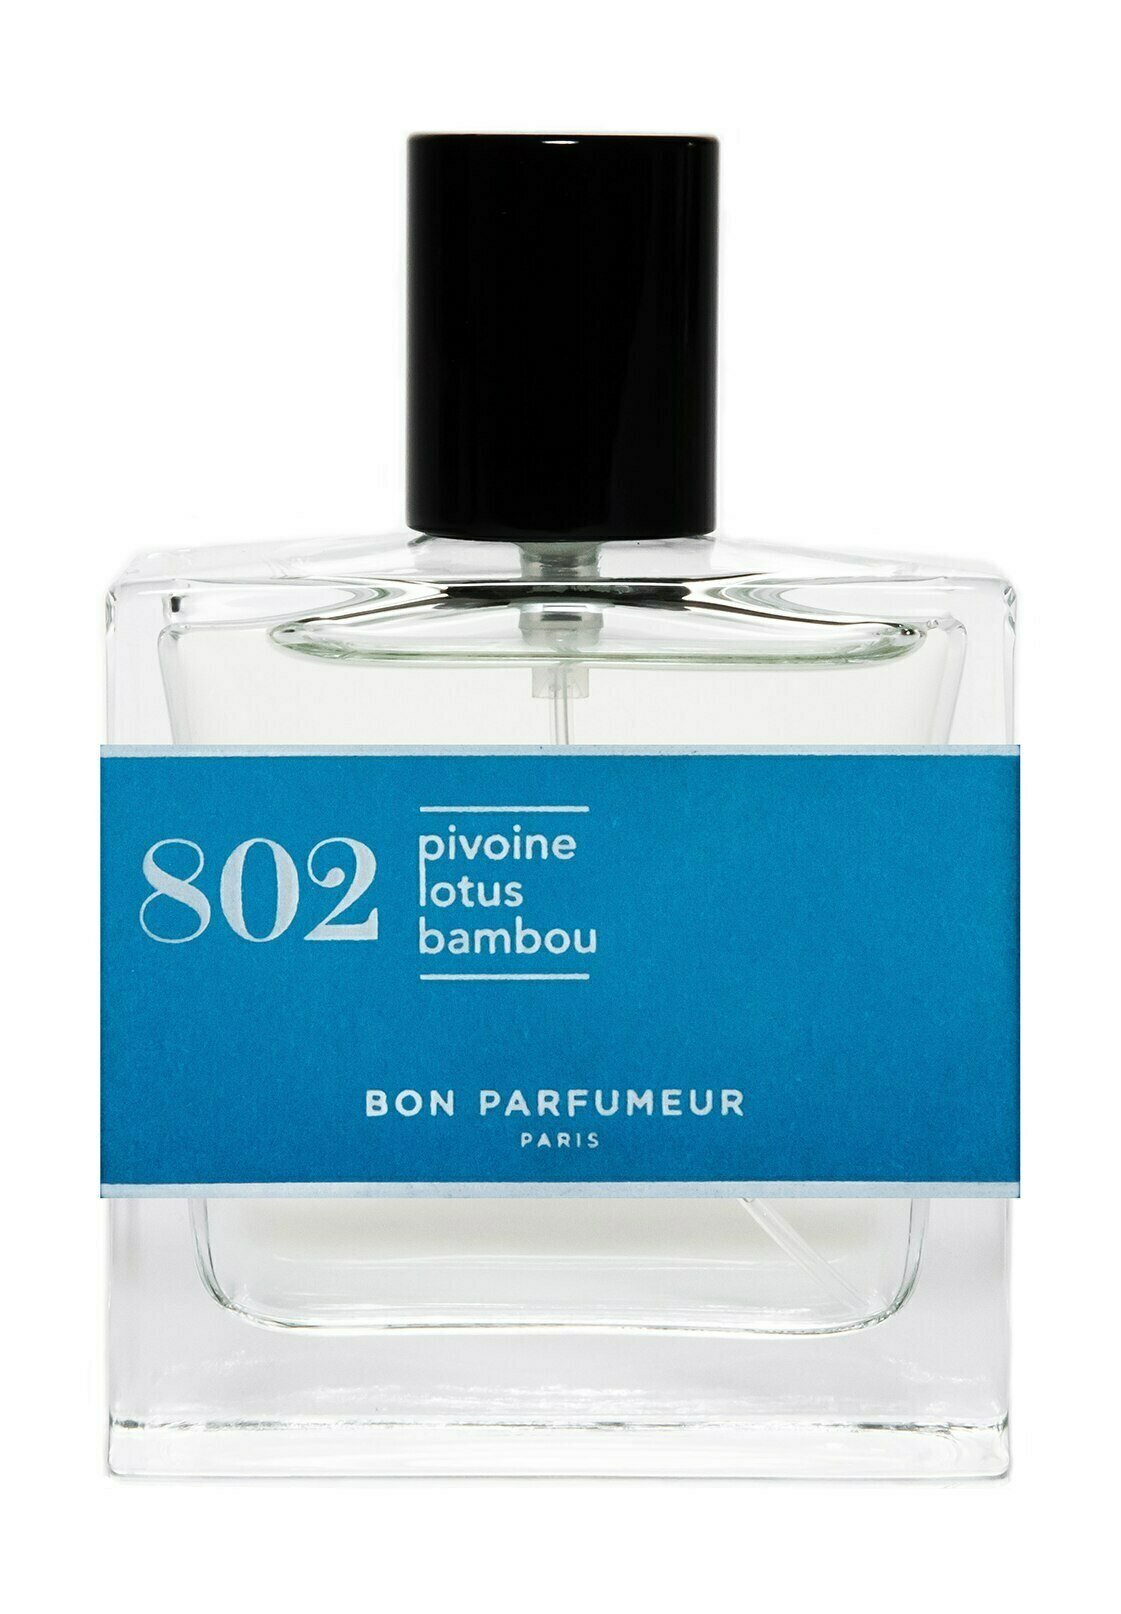 BON PARFUMEUR PEONY, LOTUS, BAMBOO - EAU DE PARFUM - Eau de Parfum - -